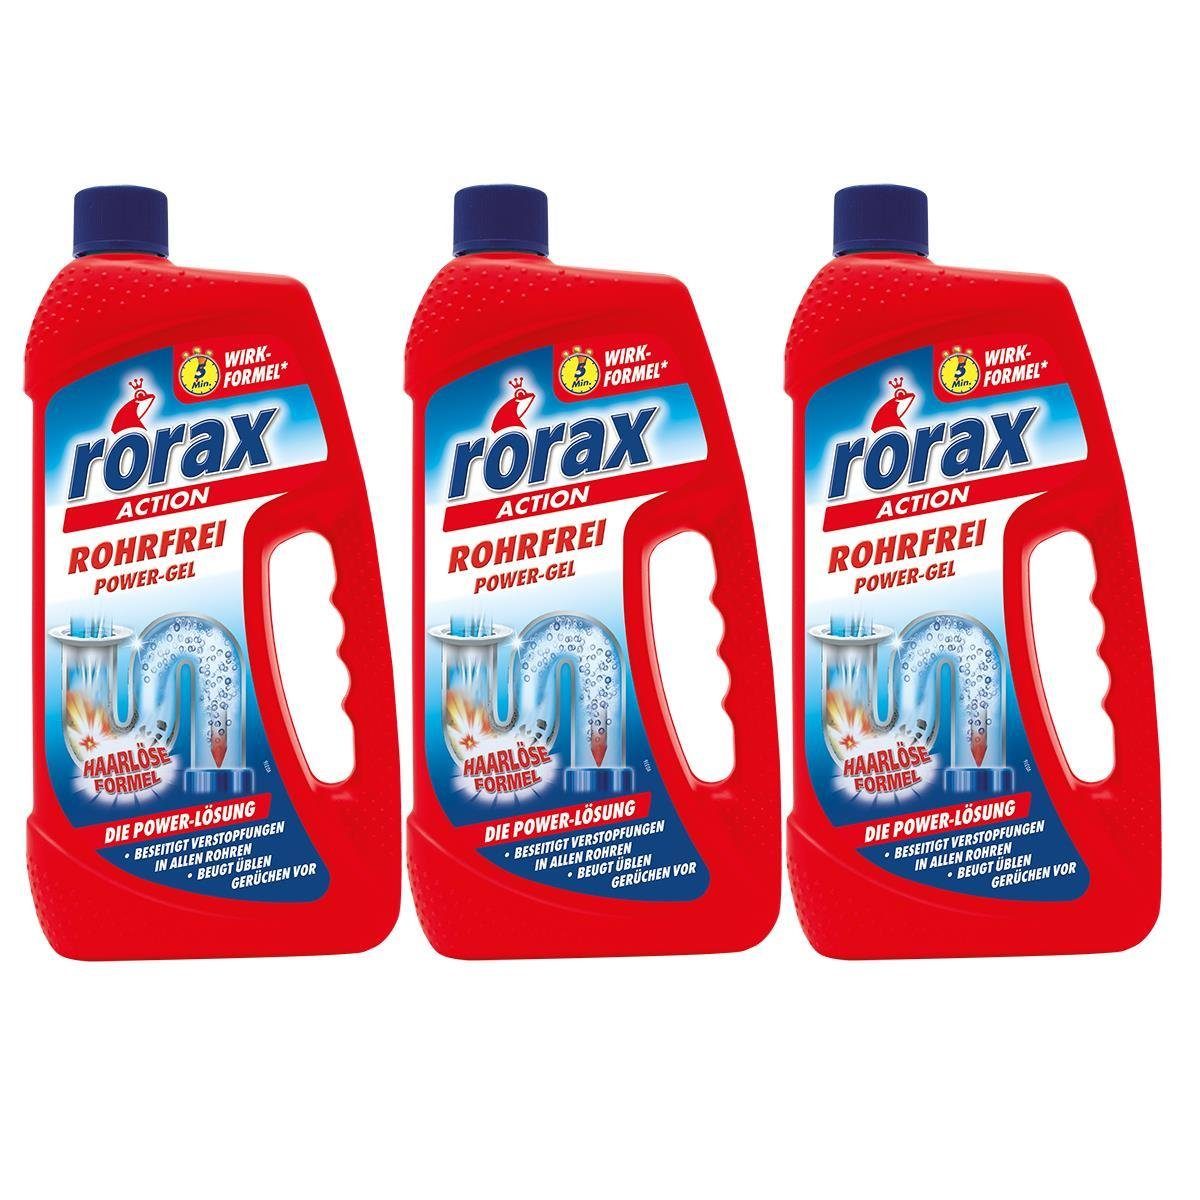 rorax 3x rorax Rohrfrei 1 Rohrreiniger - Liter Haare Löst auf Power-Gel selbst